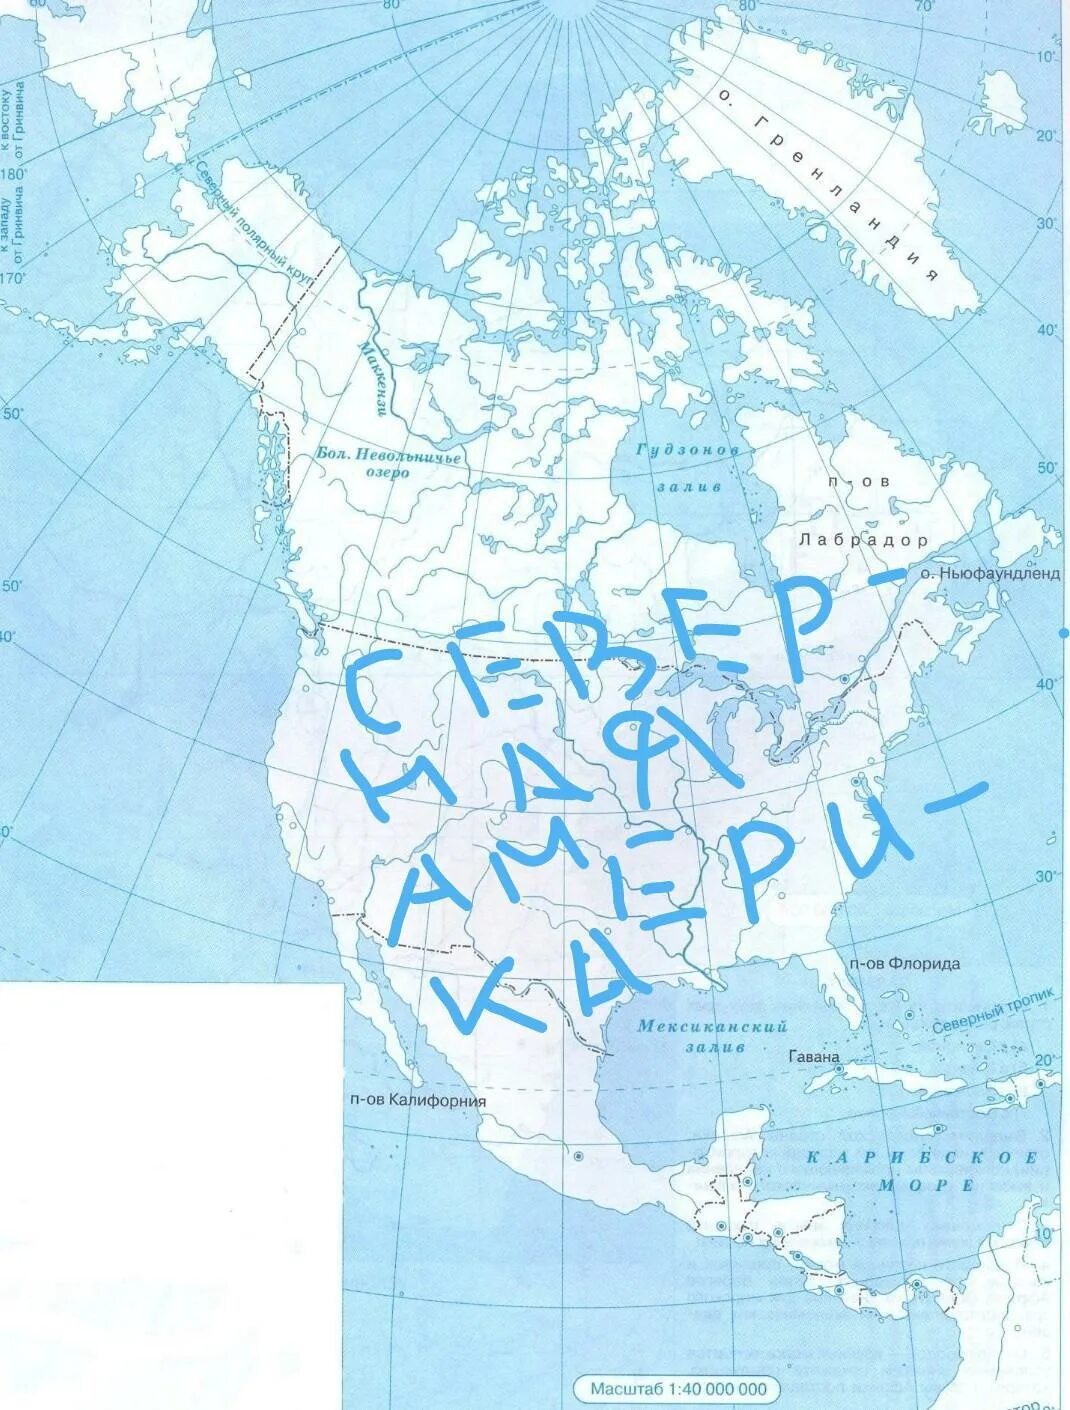 Контурная карта. Контурная карта Северной Америки. Границы Северной Америки на контурной карте. Реки Северной Америки на контурной карте.